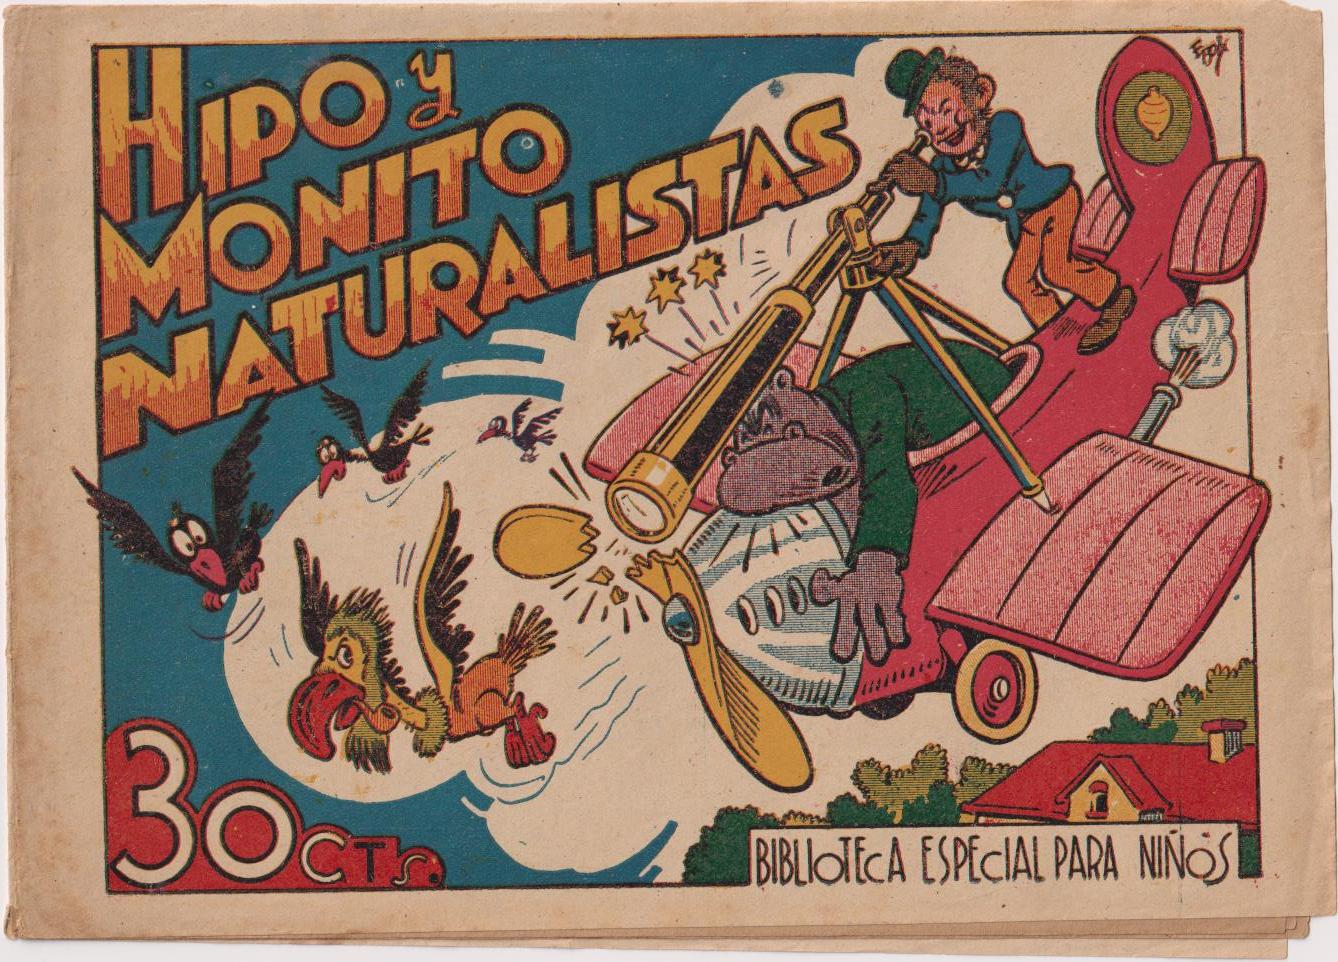 Hipo y Monito Naturalistas. Biblioteca especial para Niños. Maco 1943